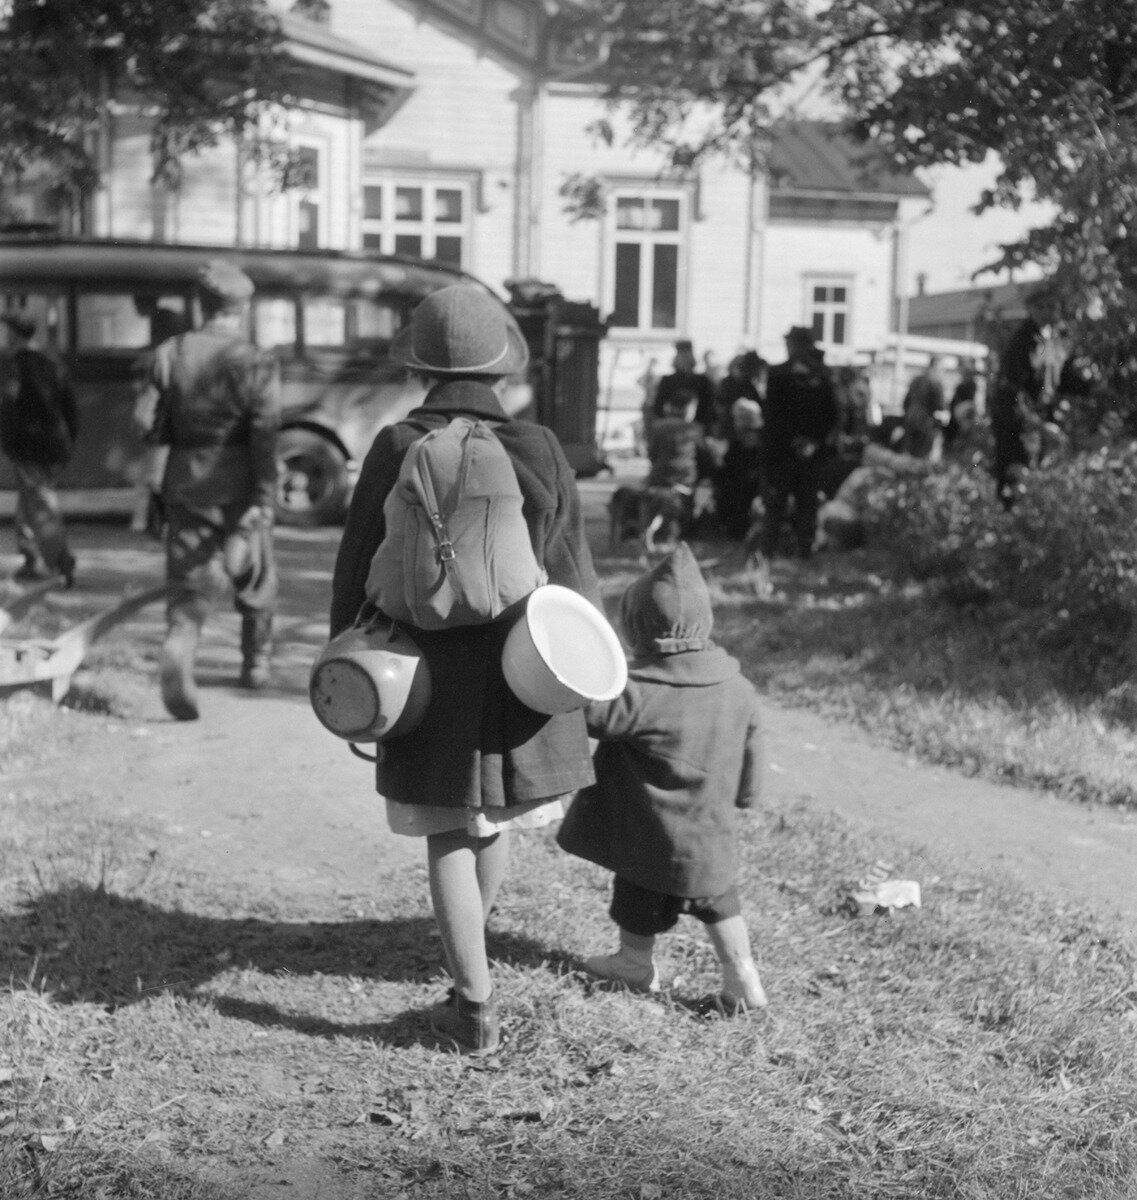 Evakoita Jaakkiman asemalla kesällä 1944. Kuten kuvastakin näkyy, auttoivat lapset voimiensa ja kykyjensä mukaisesti tavaroiden ja esineiden kantamisessa. Kiiressä kotiin jouduttiin jättämään tärkeitäkin muistoesineitä, esimerkiksi valokuvia, ja lapsille tärkeitä leluja. Kuvalähde: Pekka Kyytinen, 1944, Museovirasto.